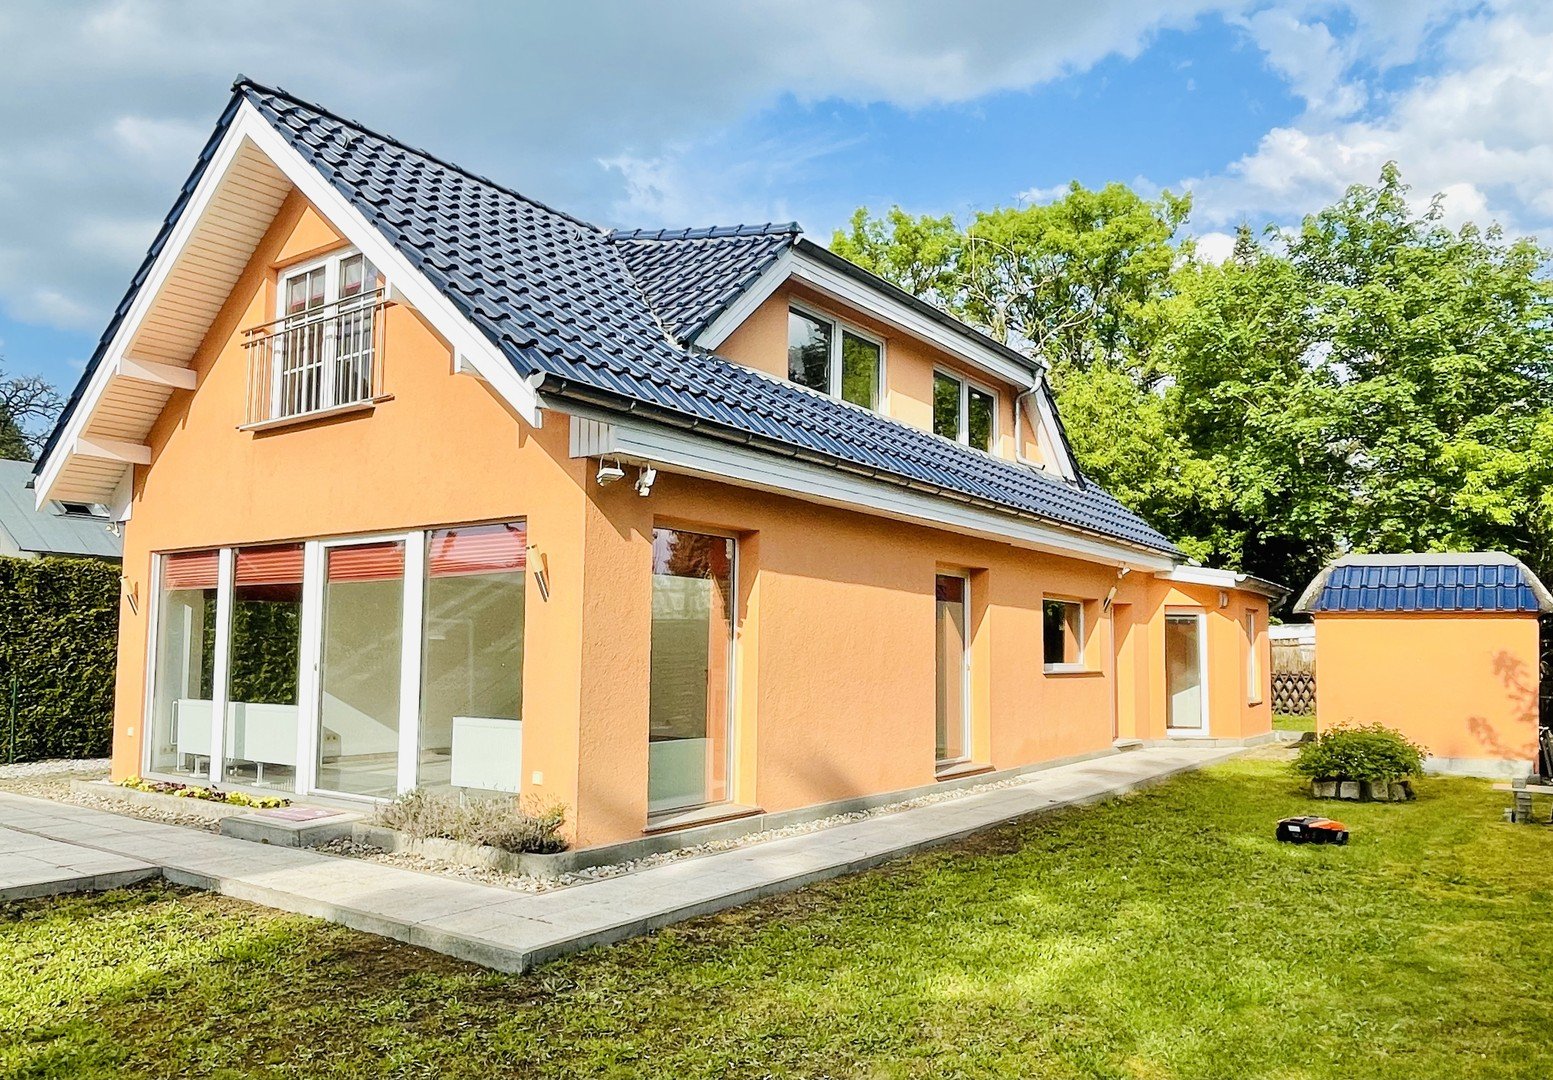 Ihr neues Zuhause in Biesdorf Süd - Das perfekte Familienidyll wartet auf Sie